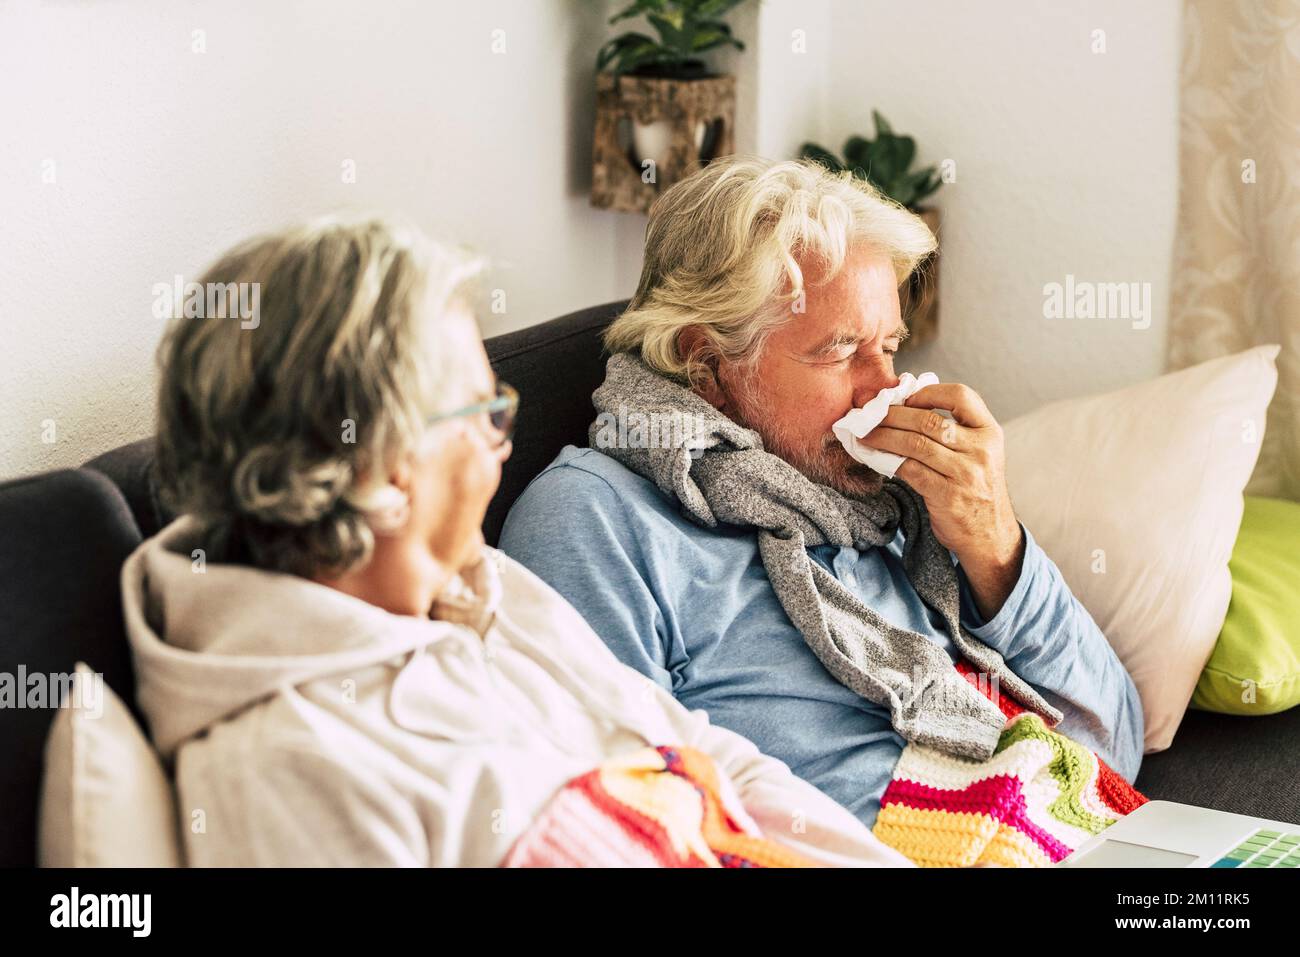 Zwei Personen Mann und Frau im Alter mit Grippe-Symptome bei der Heilung und gegenseitig helfen. Seniorenpaar mit Erkältung und Virusinfektion, das auf dem Sofa sitzt. Kalte Temperatur im Haus für Energie Stockfoto